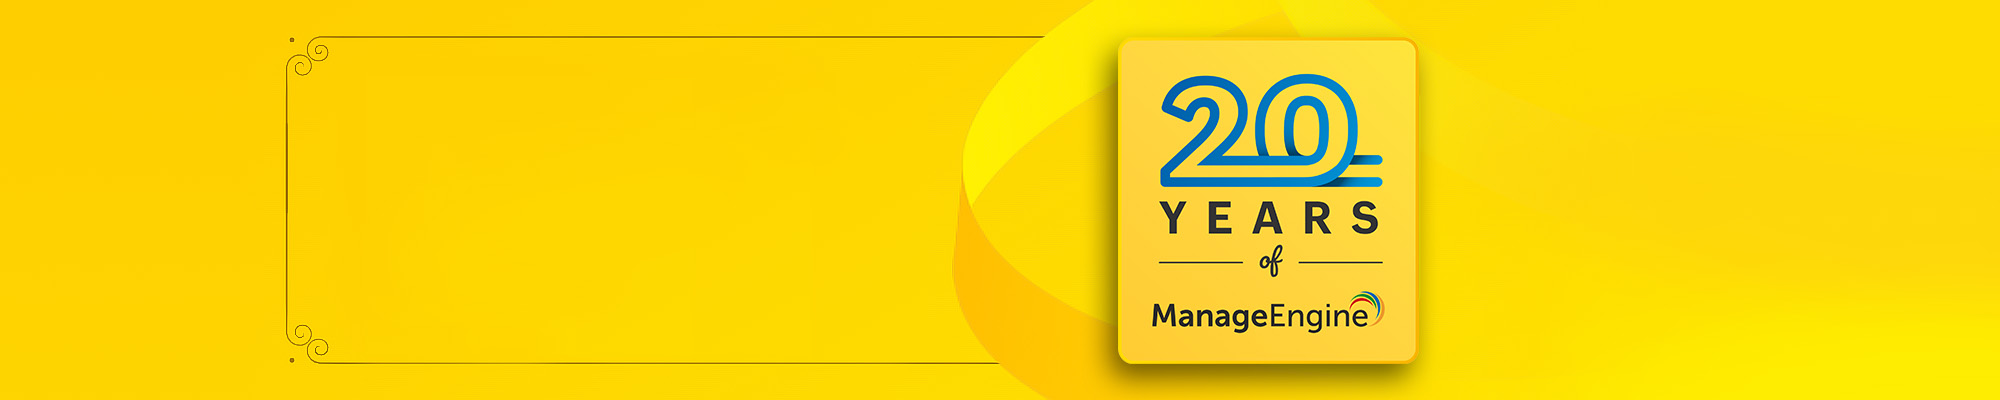 20 years of ManageEngine anniversary logo